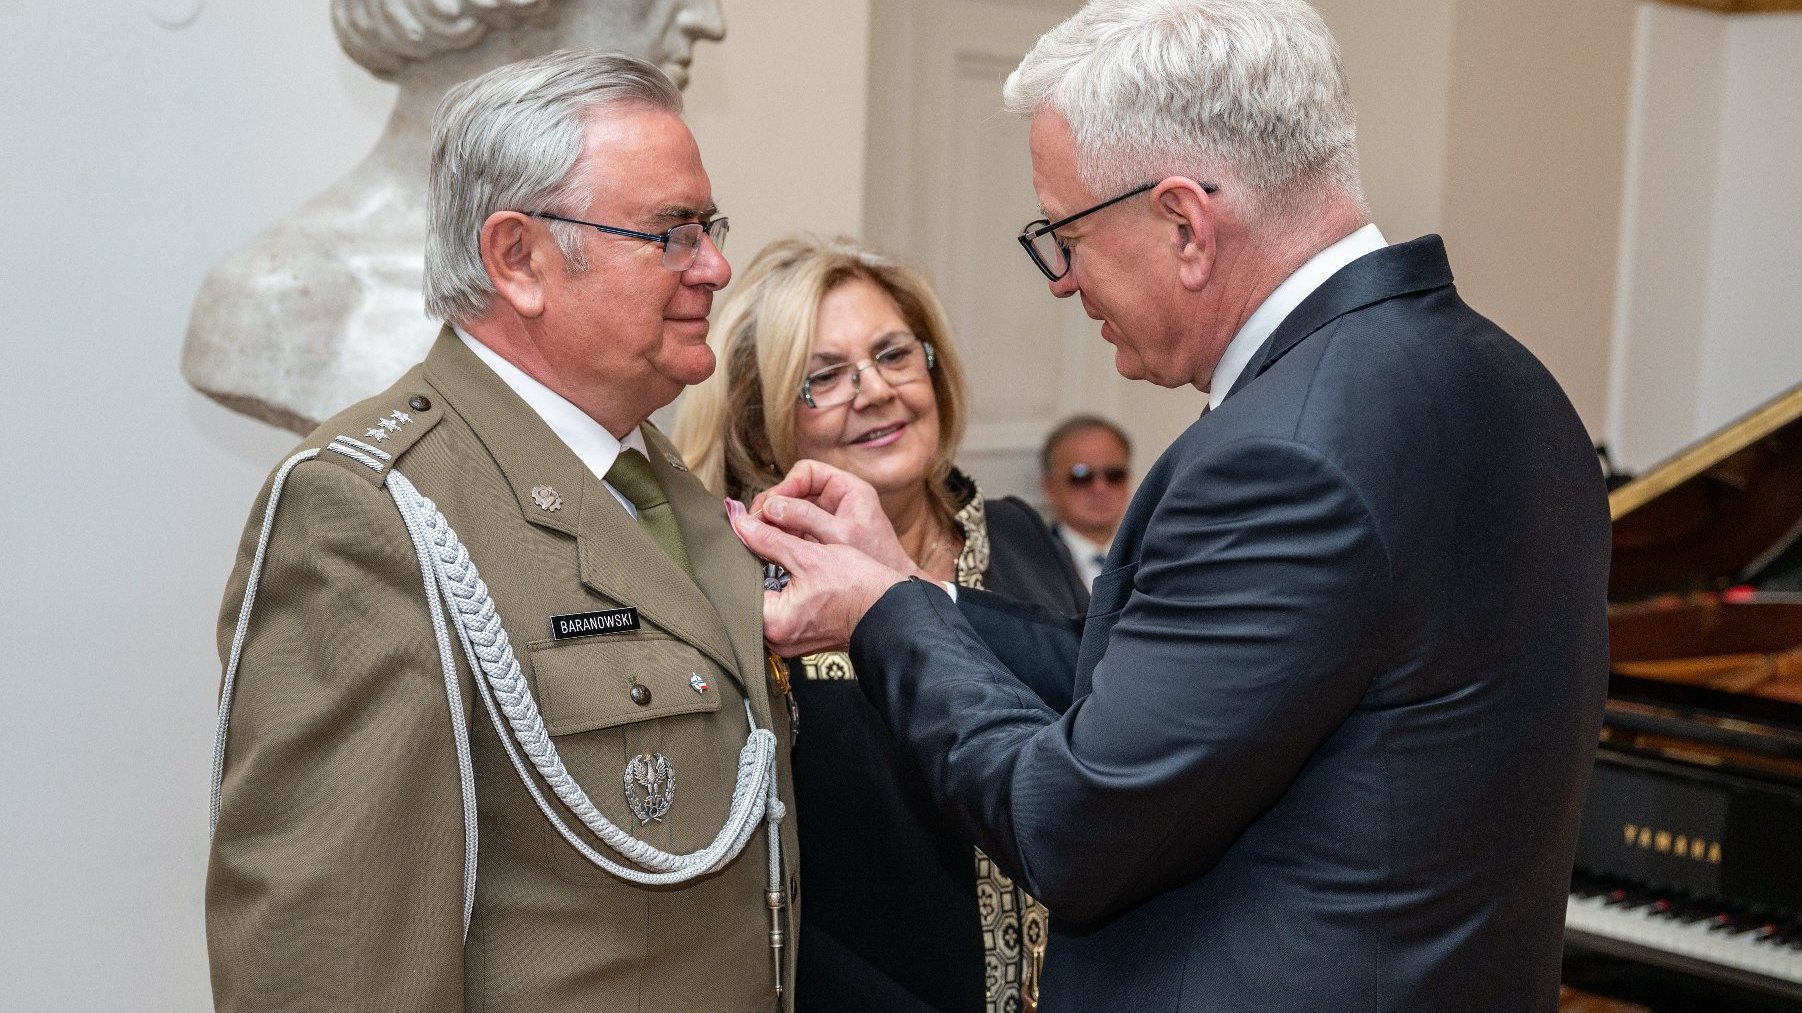 Na zdjęciu prezydent Poznania przypinający medal mężczyźnie, obok którego stoi jego żona